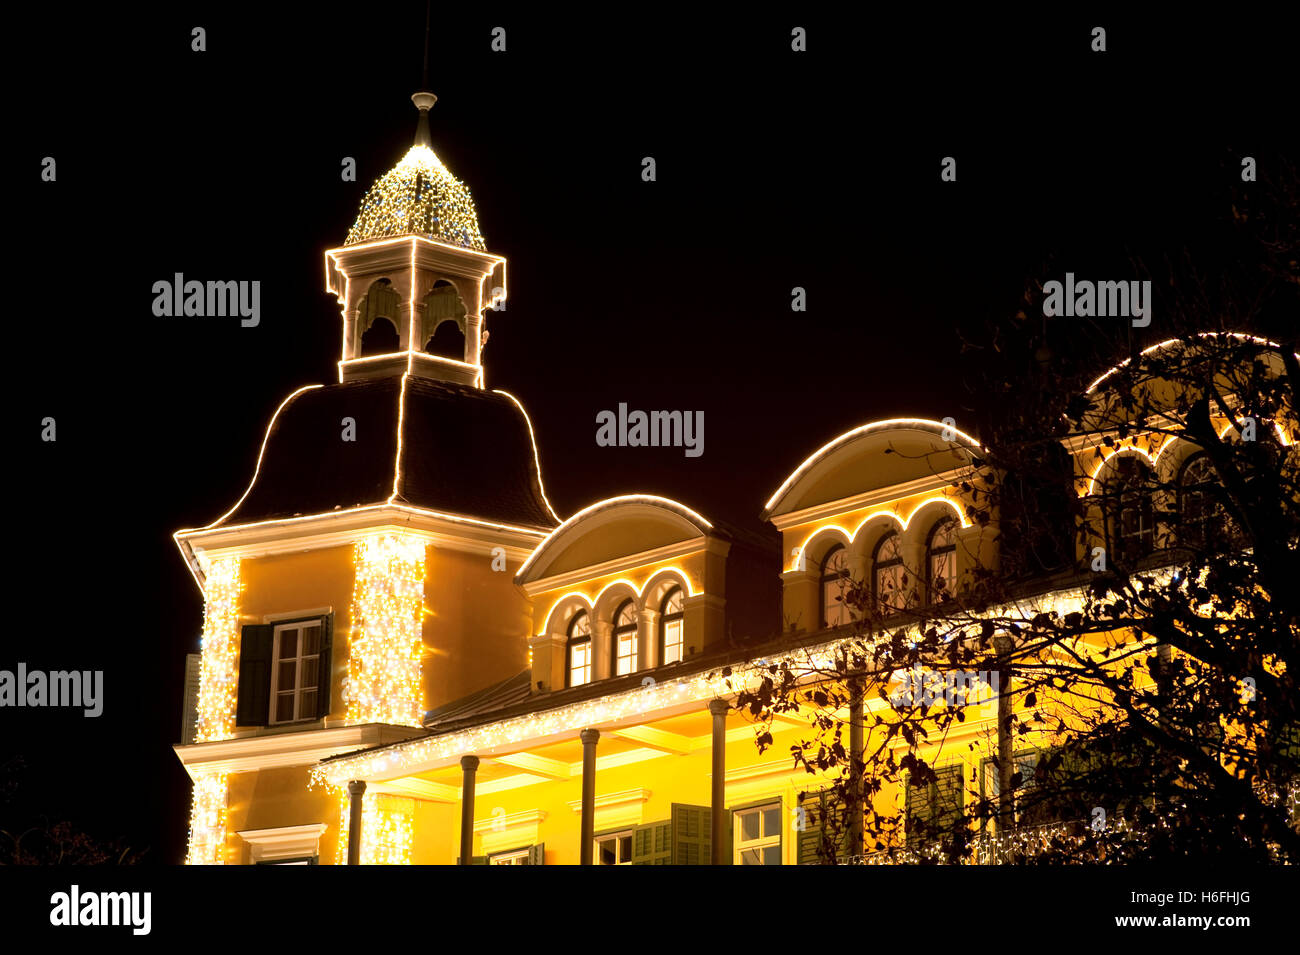 Weihnachtlich beleuchtete Gebäude, Nachtaufnahme, Wörthersee See, Velden, Kärnten, Austria, Europe Stockfoto